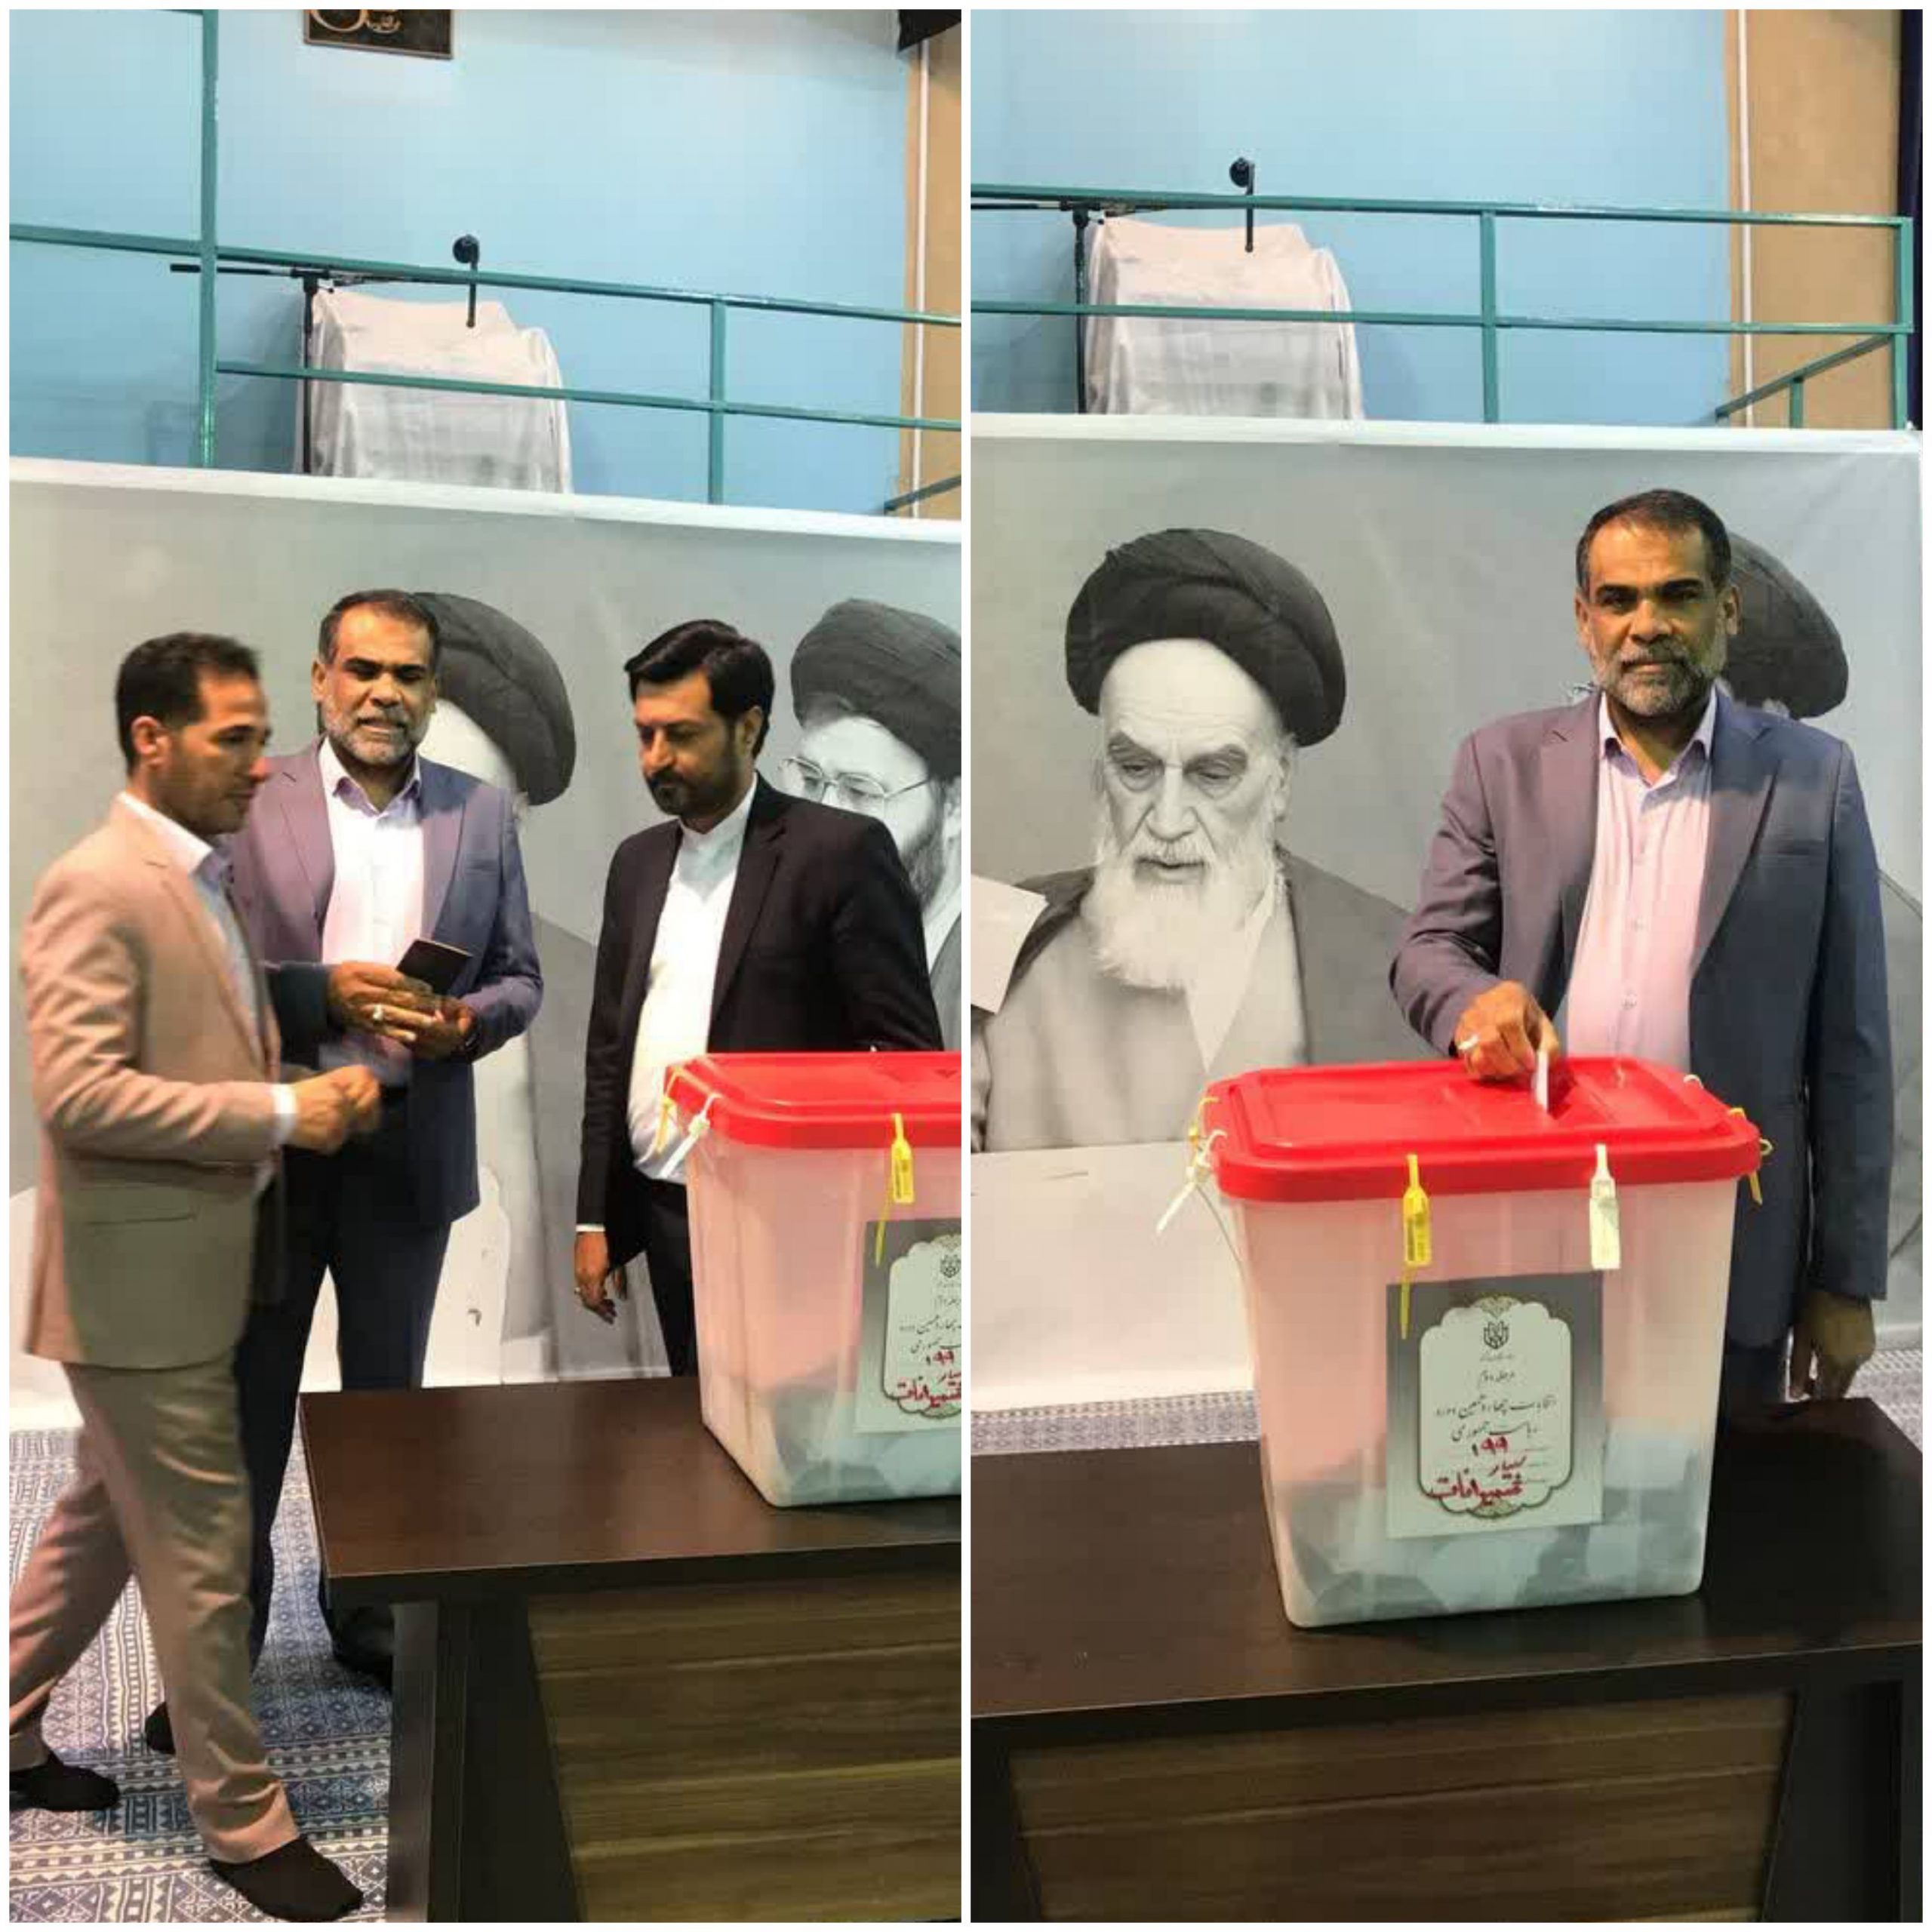 شهردار سابق منطقه ویژه اقتصادی پتروشیمی شهرستان بندرماهشهر رای خود را در حسینیه جماران به صندوق انداخت